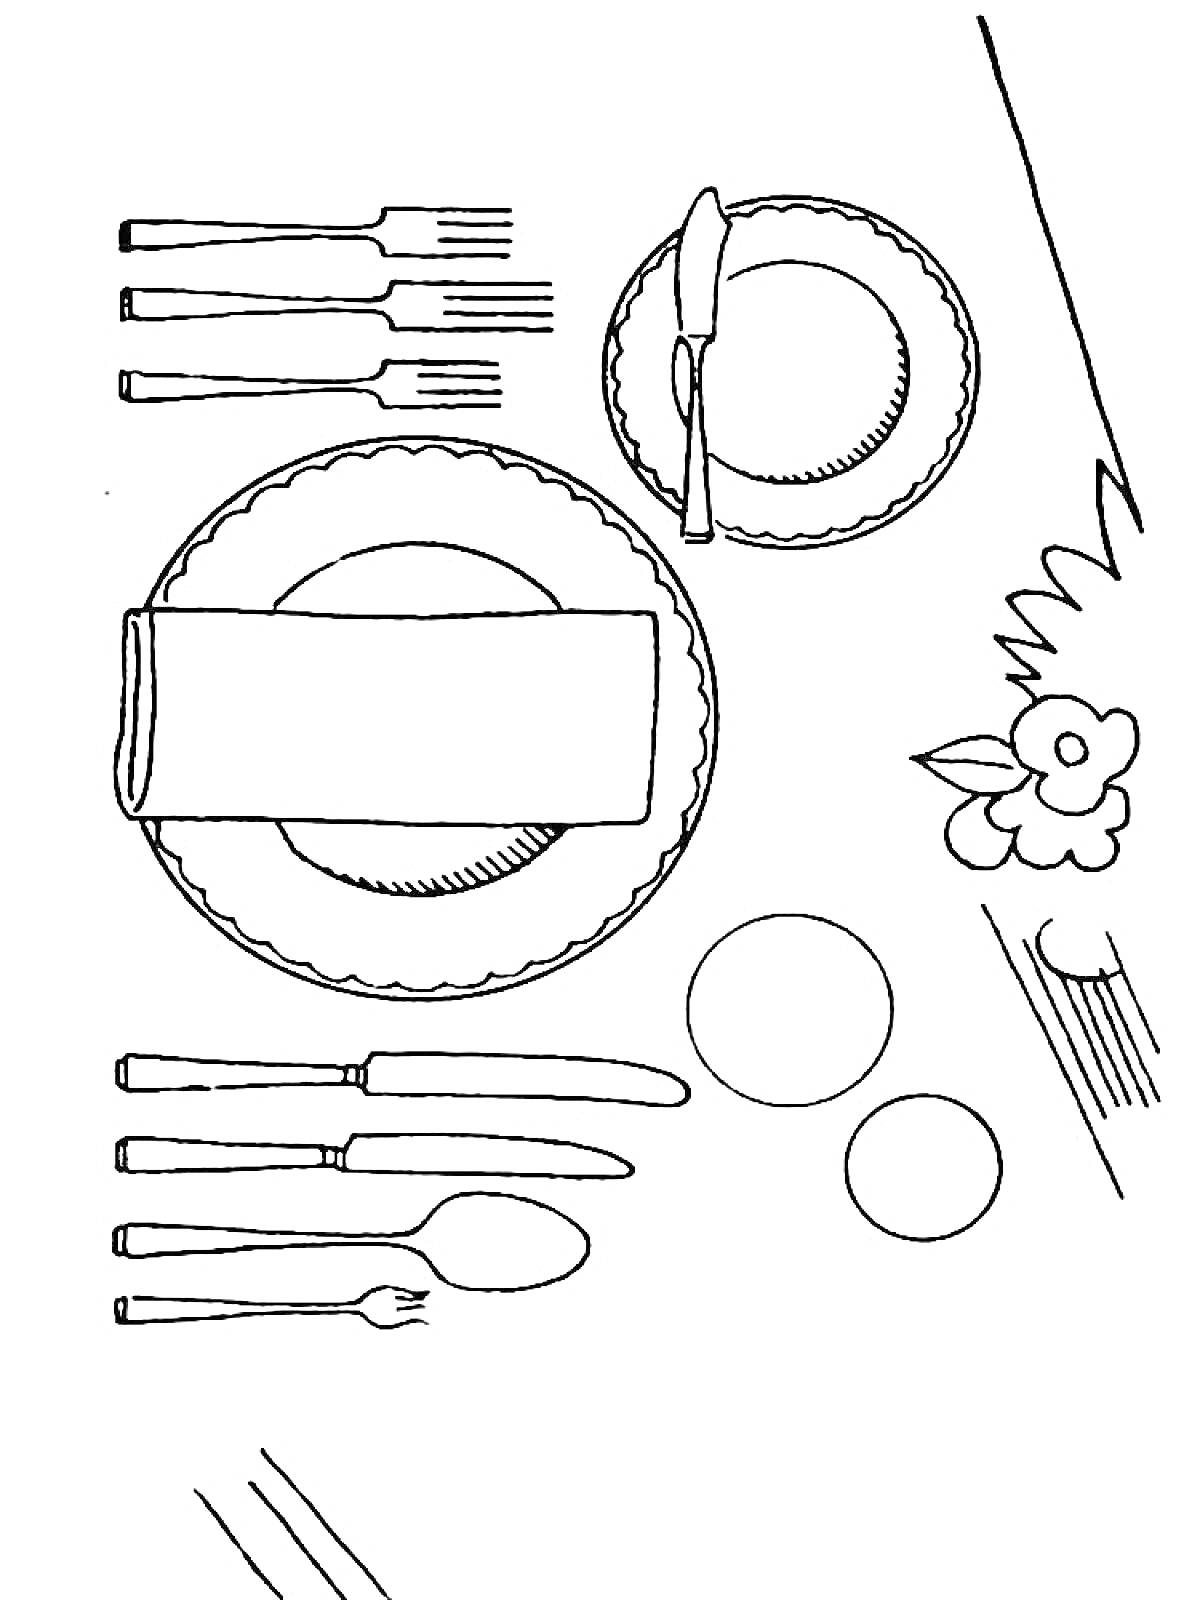 Раскраска Столовый набор, включающий тарелки, вилки, ножи, ложки, салфетки, цветок